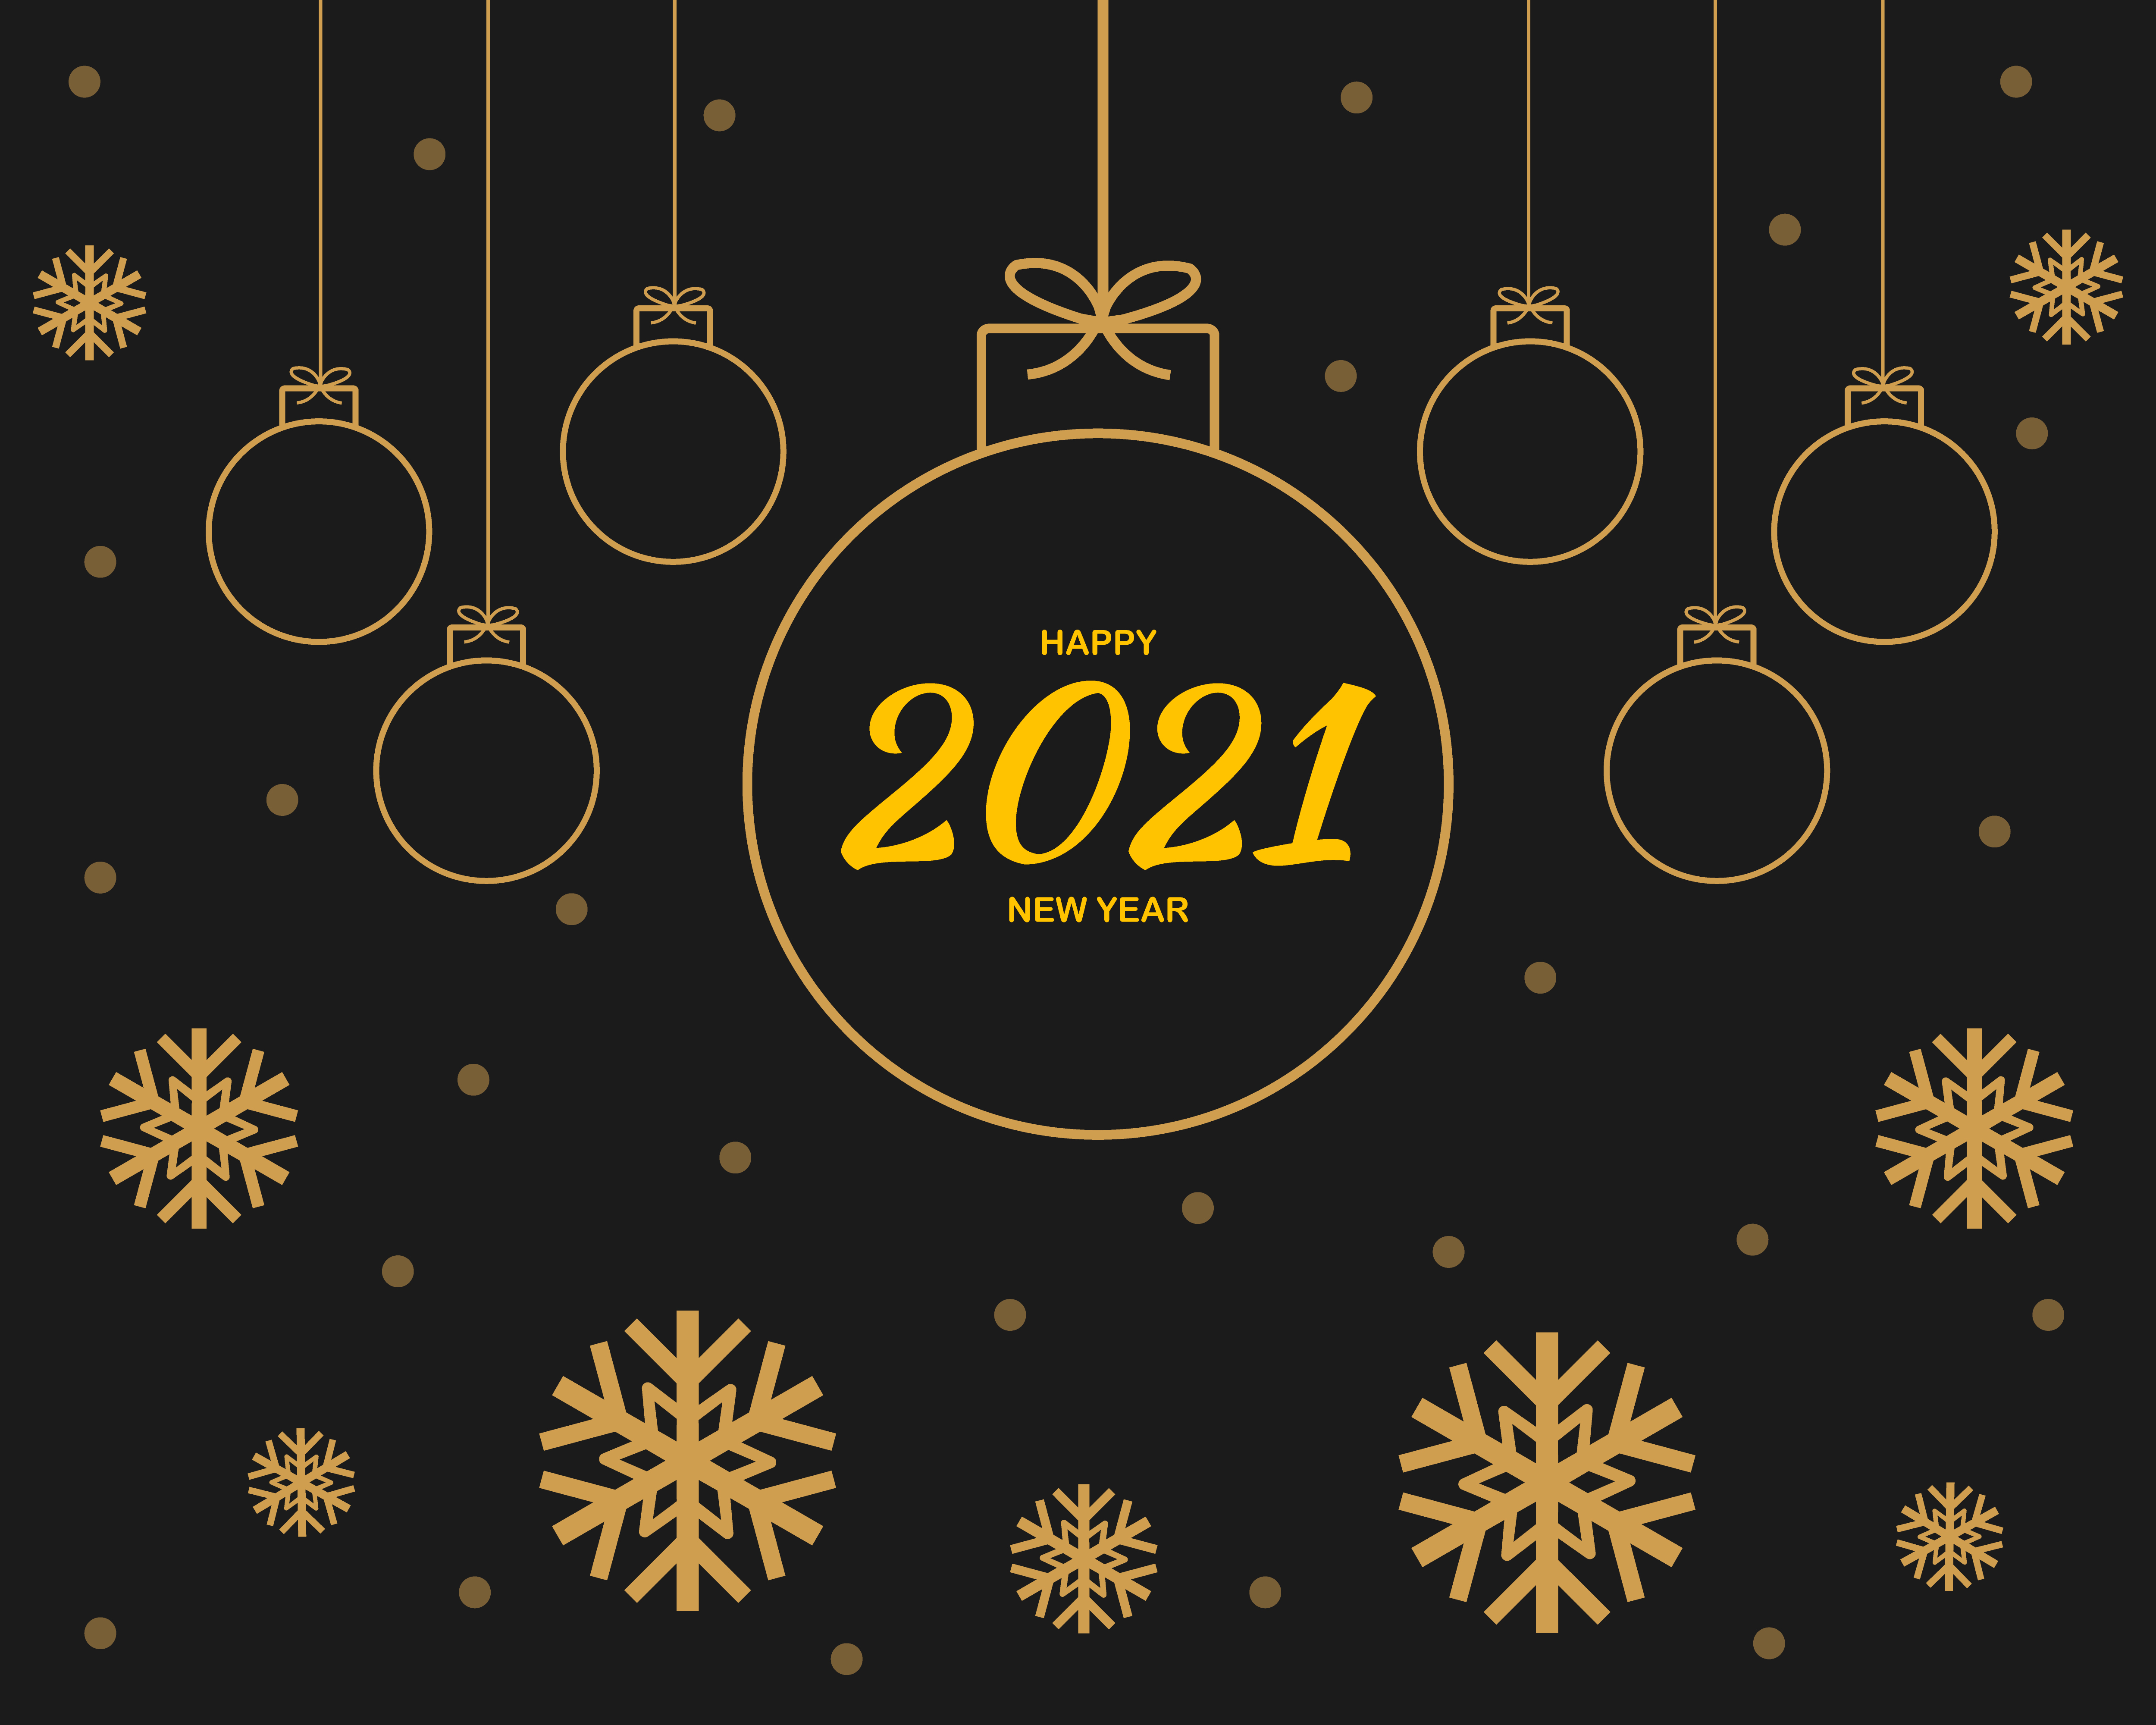 Happy New Year 2021 Background Vector 1822393 Vector Art at Vecteezy